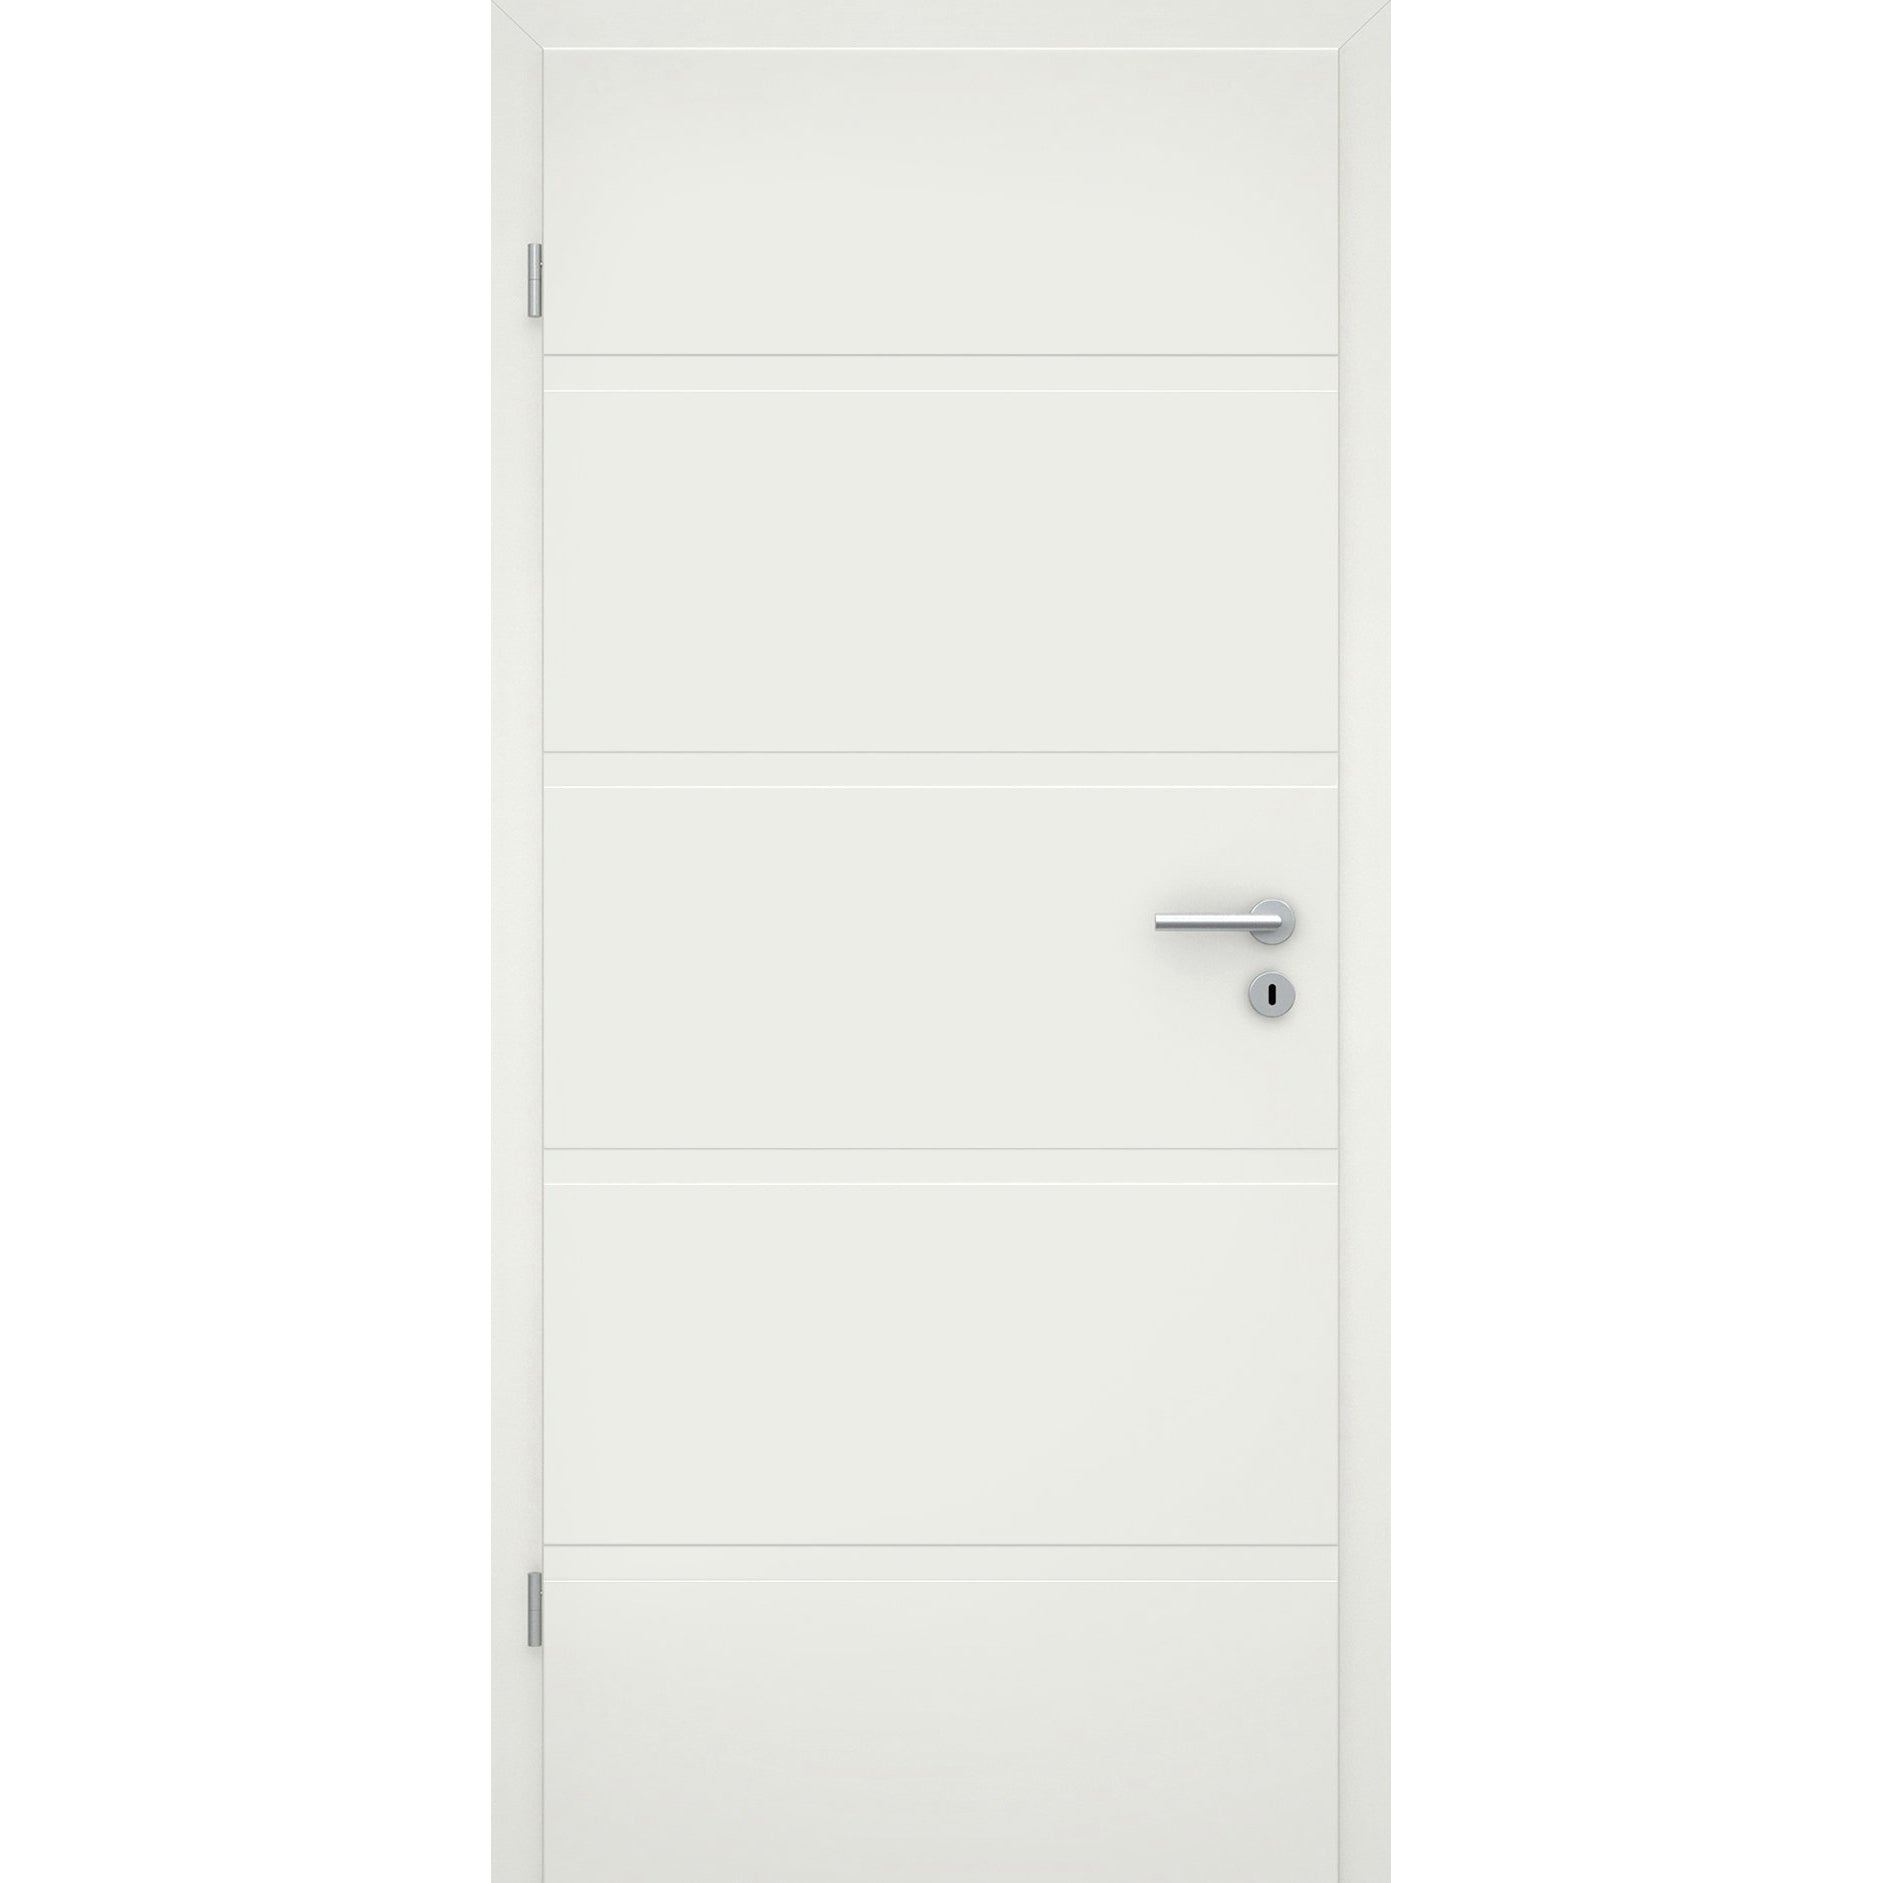 Wohnungseingangstür soft-weiß 4 breite Rillen Eckkante SK1 / KK3 - Modell Designtür QB41